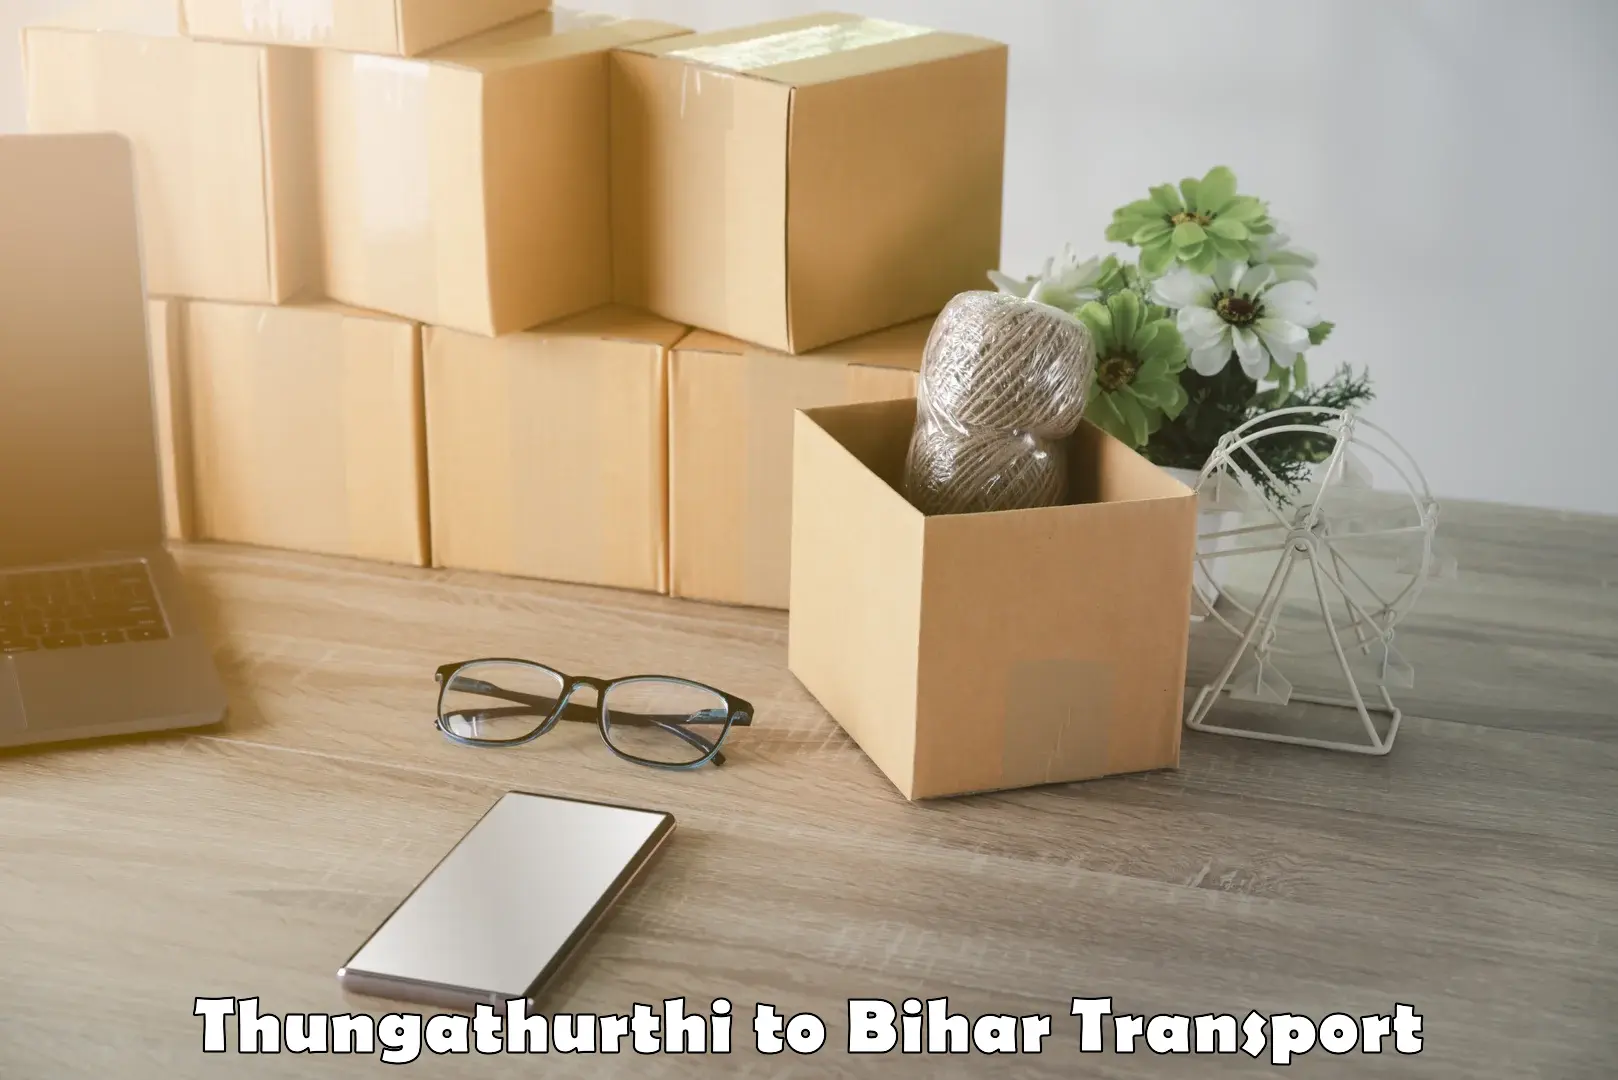 Luggage transport services Thungathurthi to Narkatiaganj